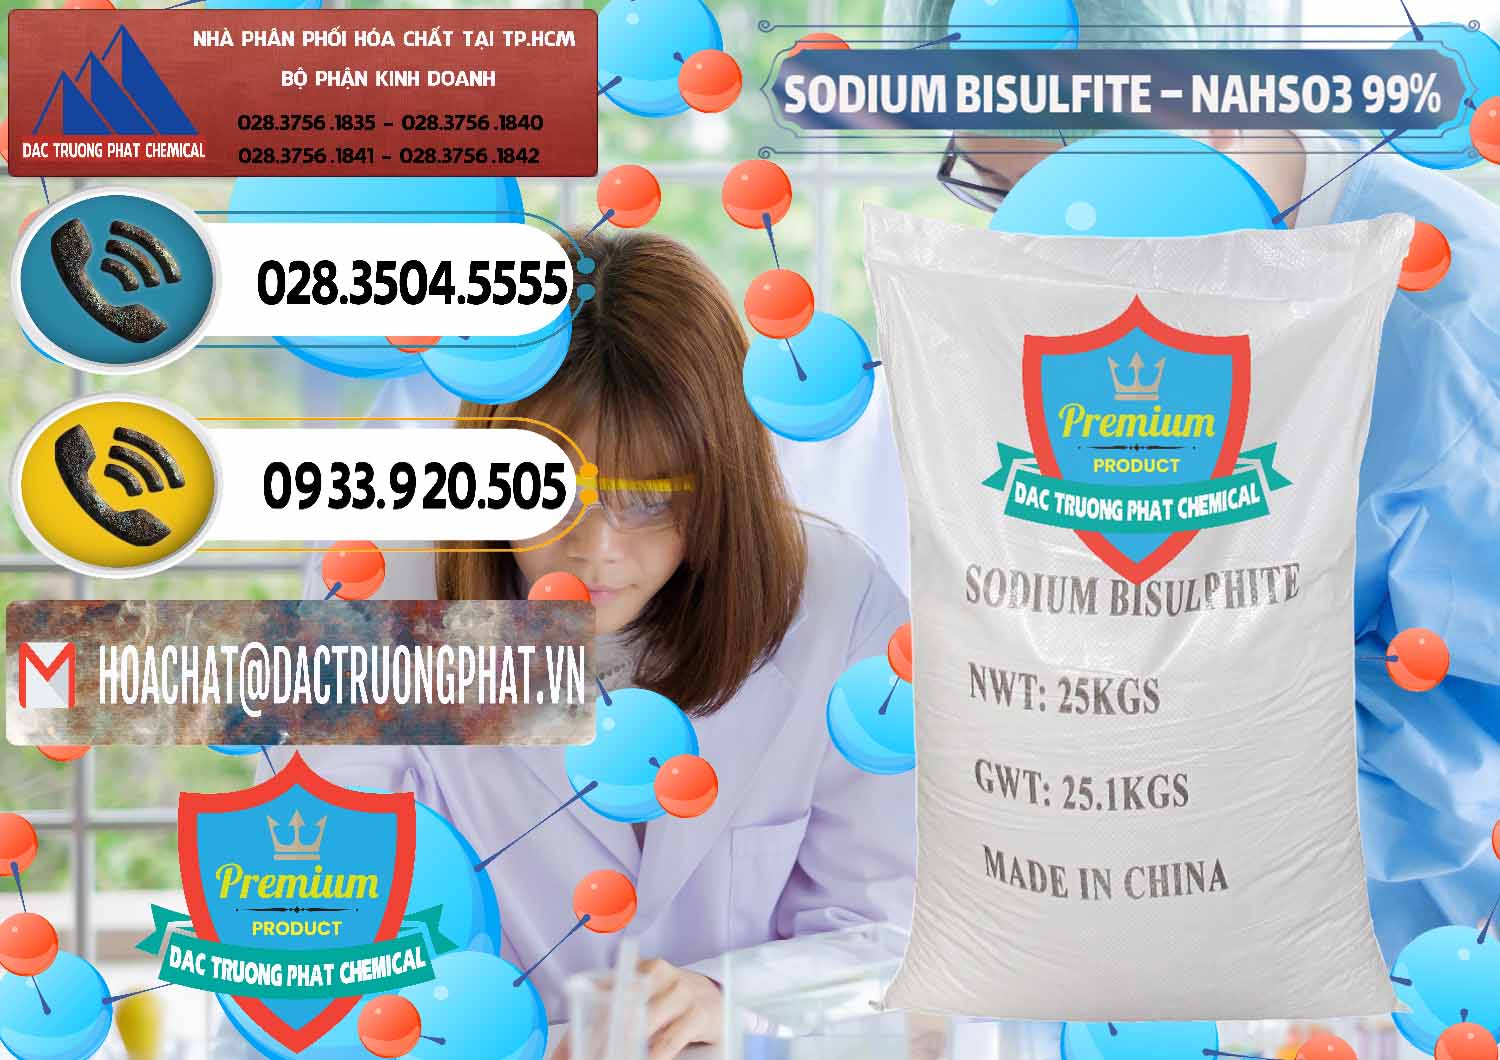 Công ty chuyên phân phối và bán Sodium Bisulfite – NAHSO3 Trung Quốc China - 0140 - Đơn vị cung cấp & phân phối hóa chất tại TP.HCM - hoachatdetnhuom.vn